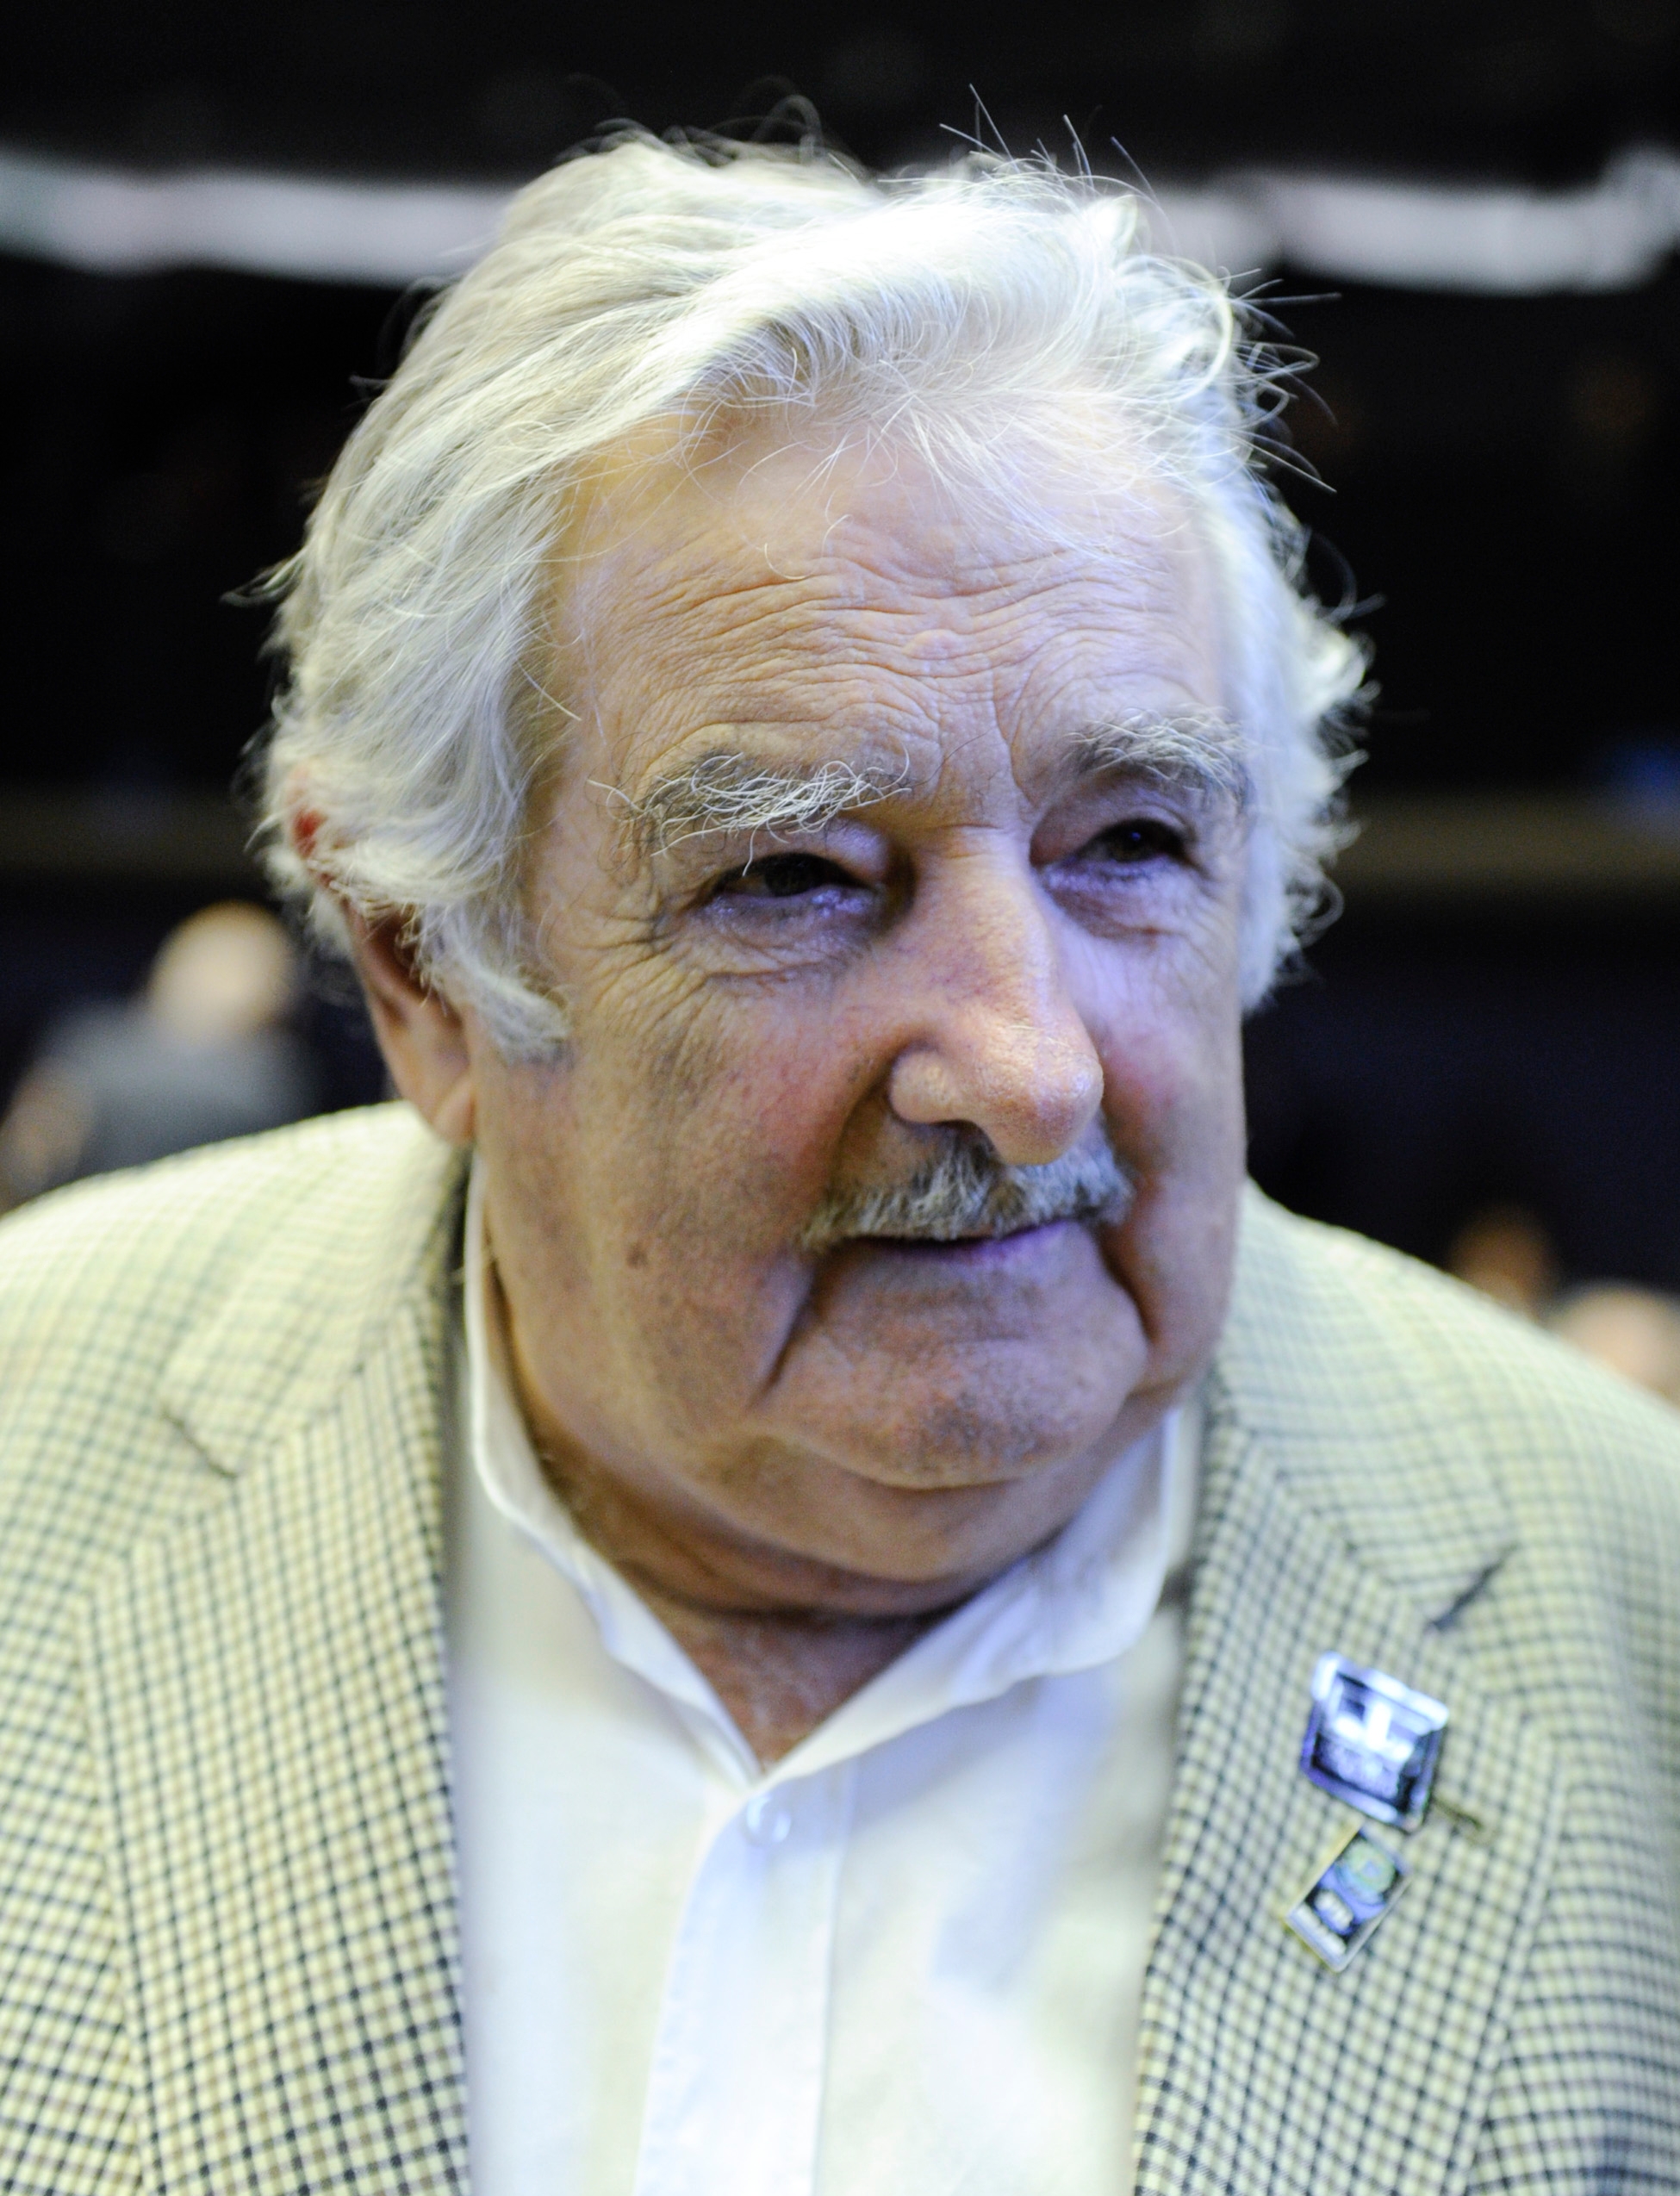 auteur Jose Mujica de la citation Aucun pays ne peut résoudre le changement climatique seul, nous devons prendre des mesures mondiales.